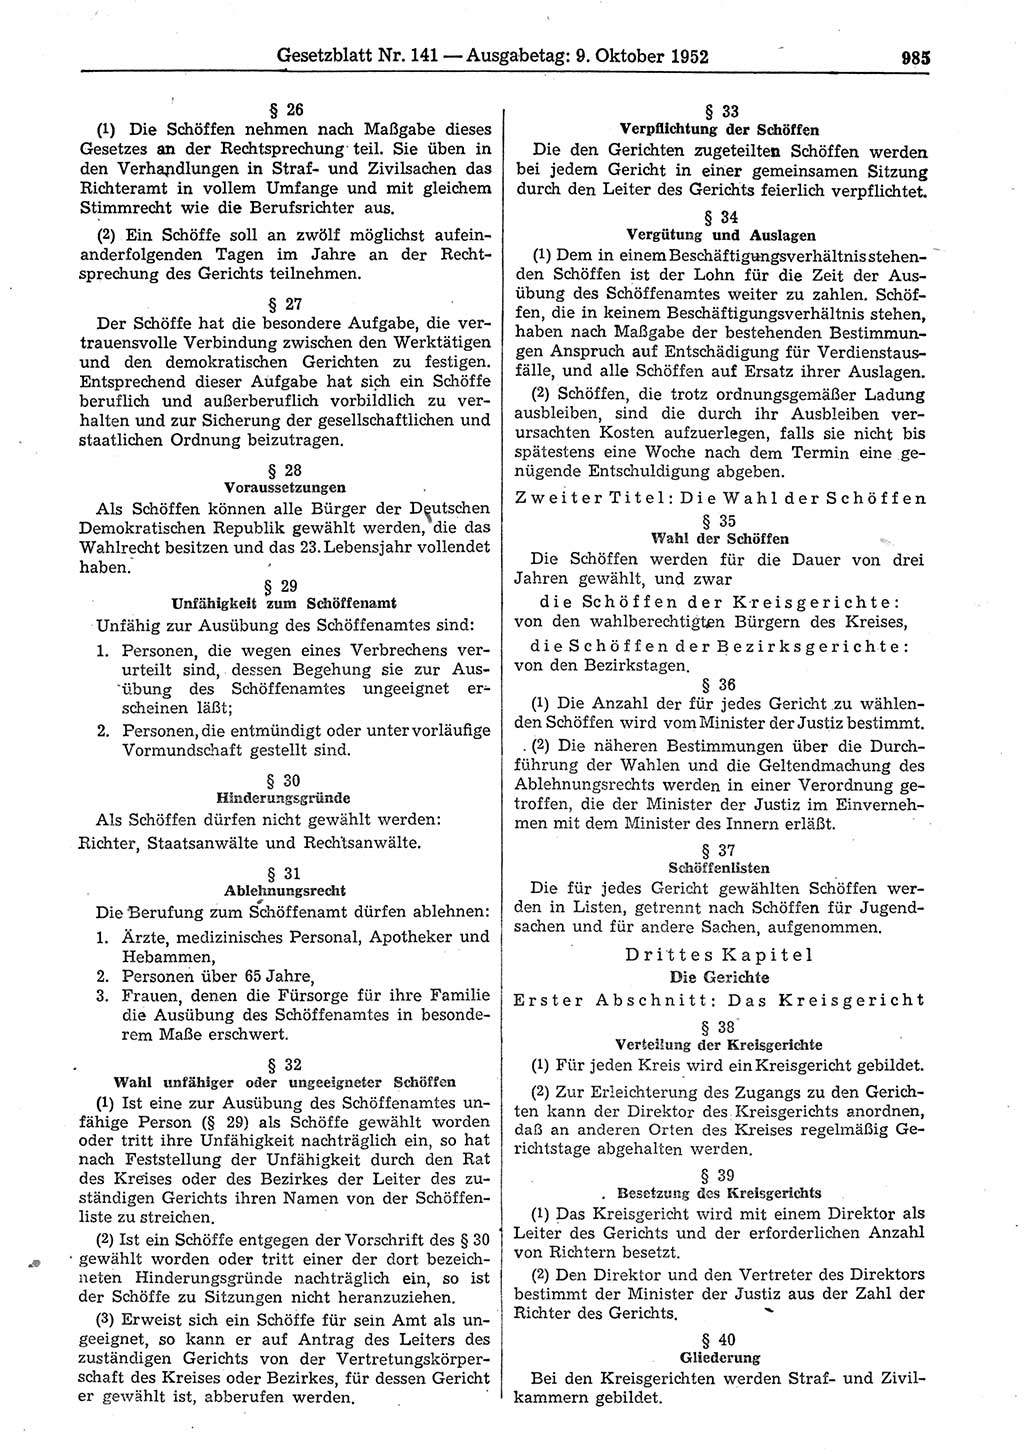 Gesetzblatt (GBl.) der Deutschen Demokratischen Republik (DDR) 1952, Seite 985 (GBl. DDR 1952, S. 985)